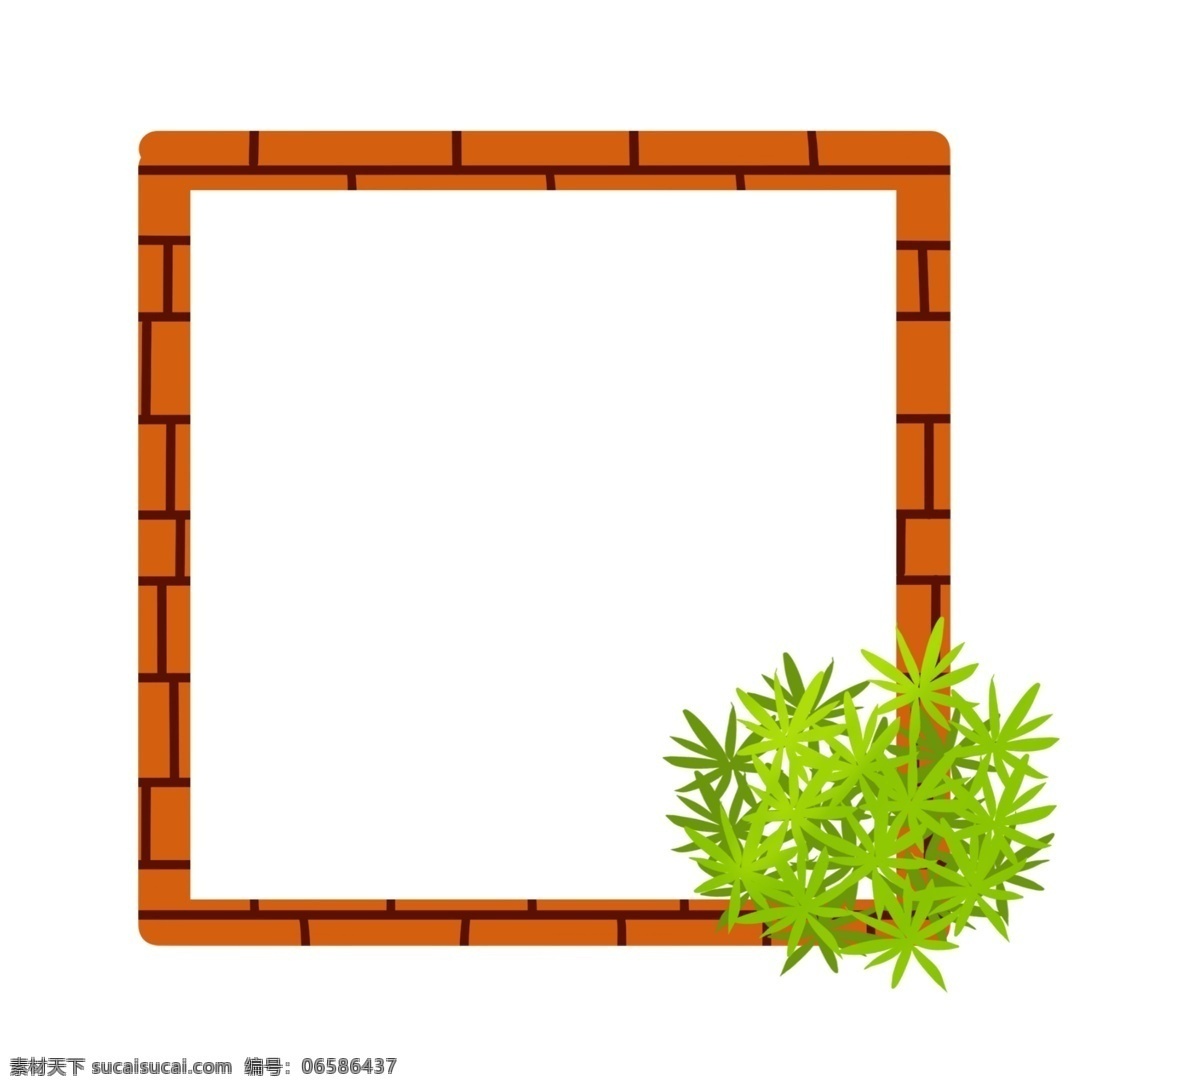 绿色植物 边框 插画 植物边框 创意边框 橙色边框 边框插图 可爱边框